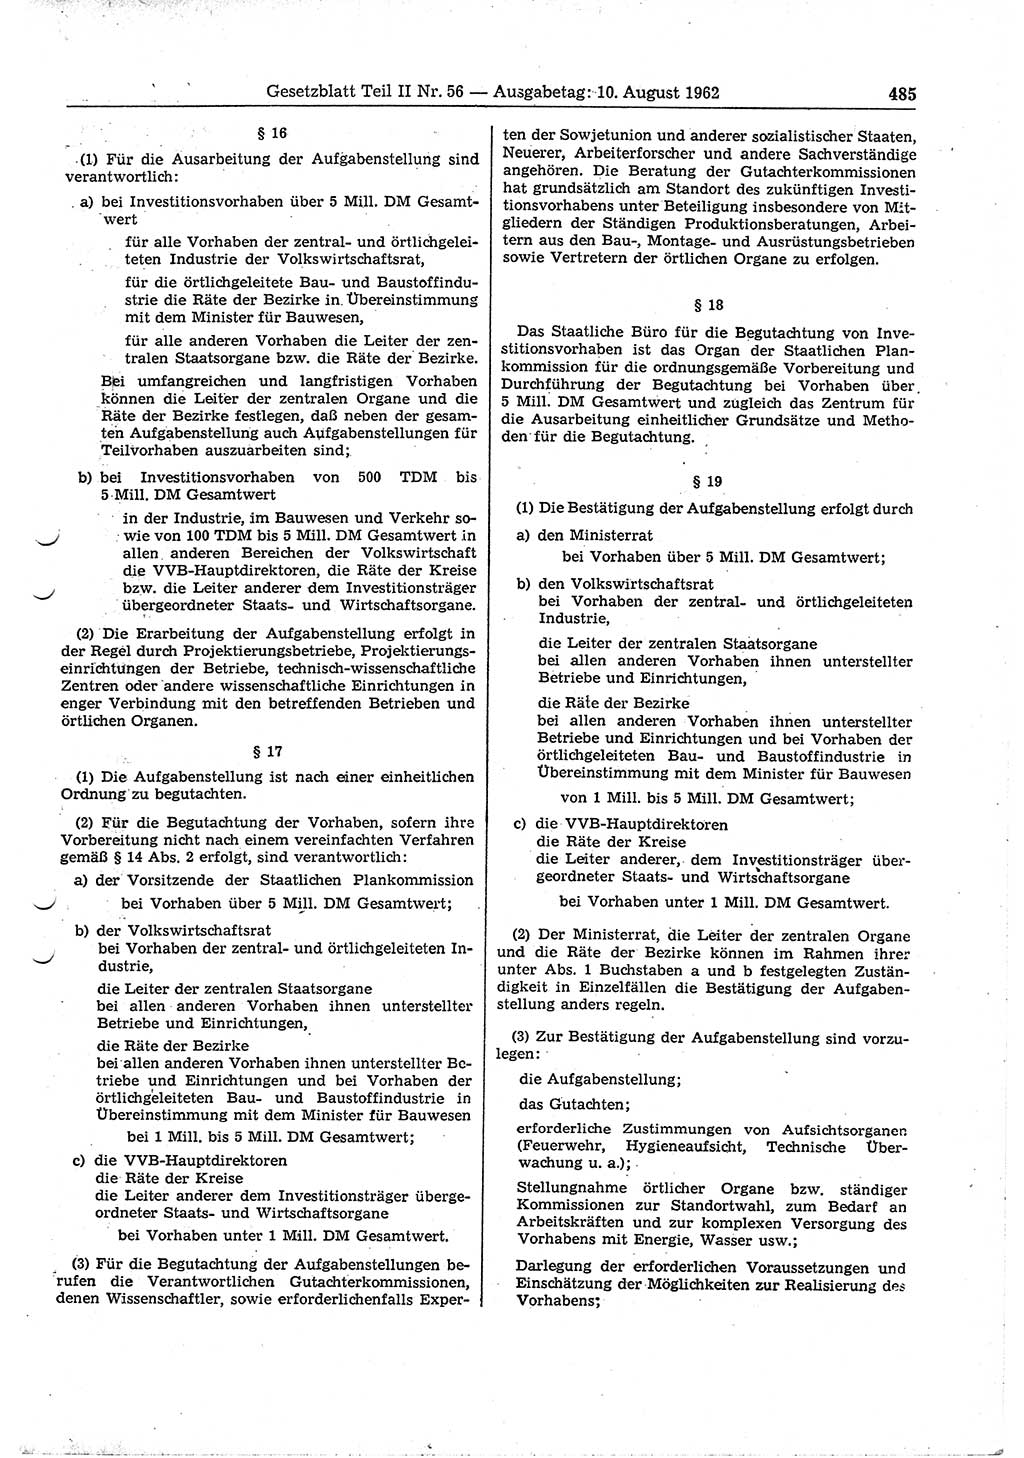 Gesetzblatt (GBl.) der Deutschen Demokratischen Republik (DDR) Teil ⅠⅠ 1962, Seite 485 (GBl. DDR ⅠⅠ 1962, S. 485)